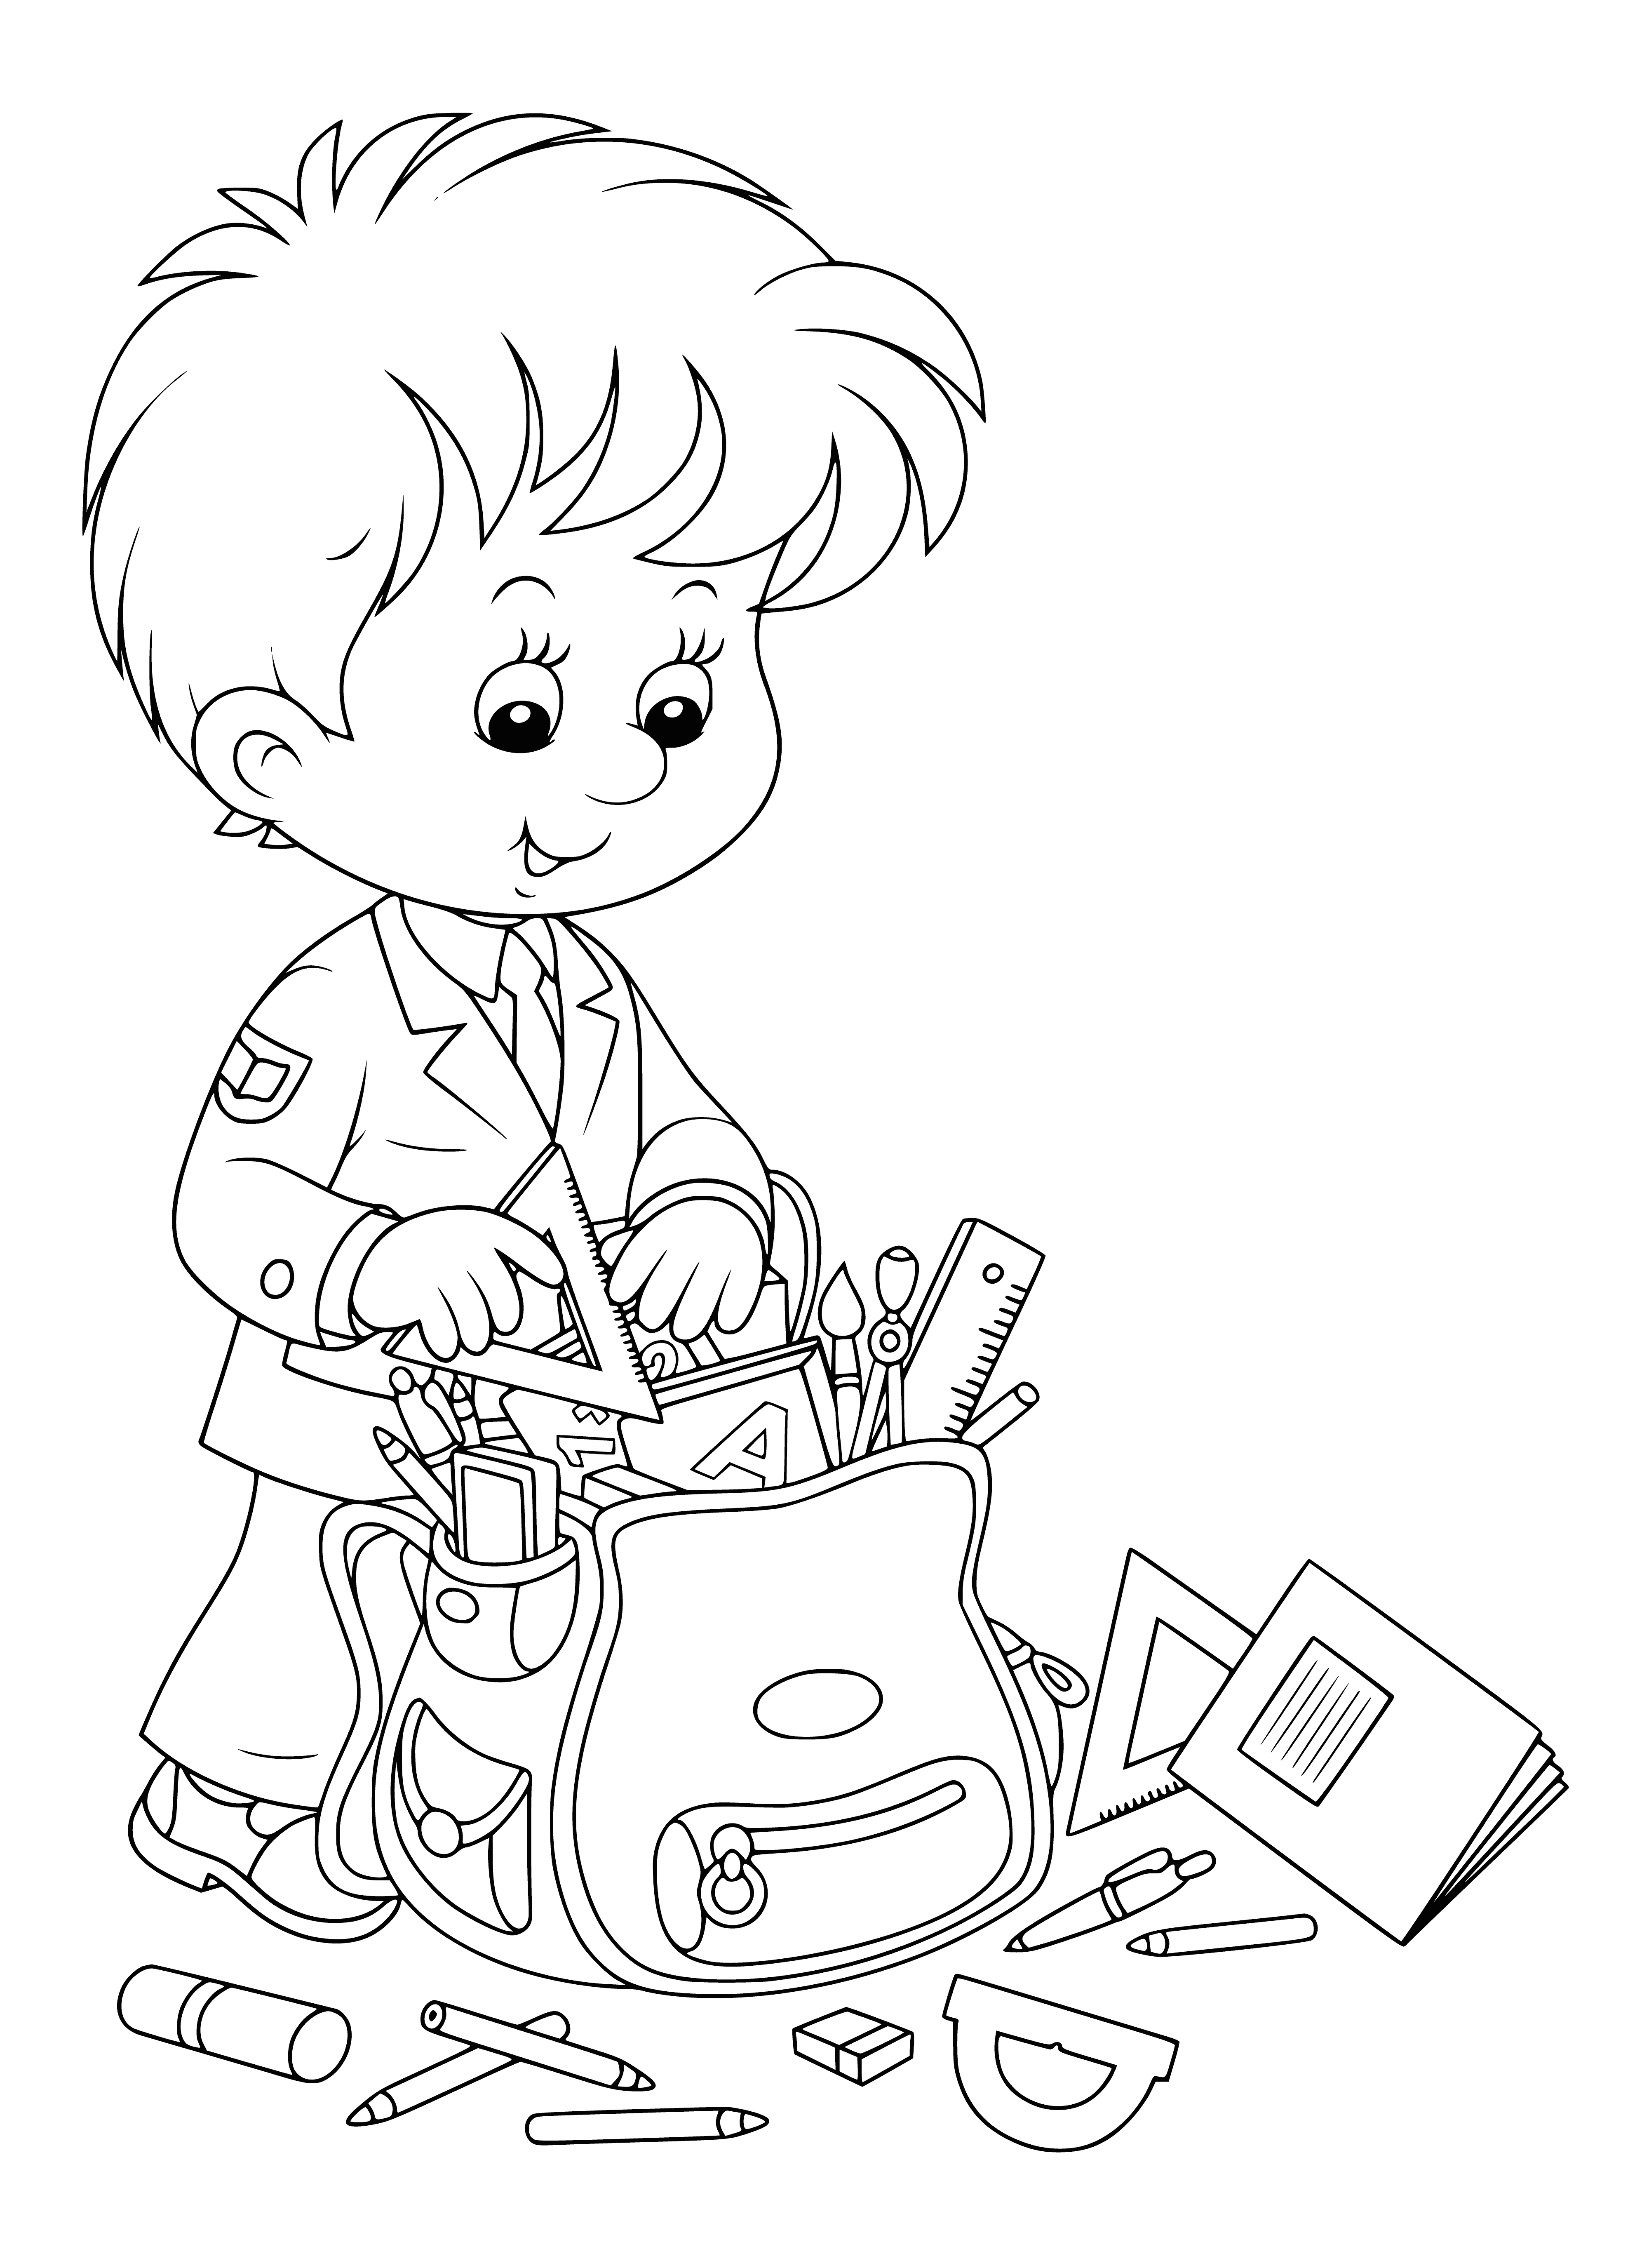 Junge sammelt eine Aktentasche Malseite